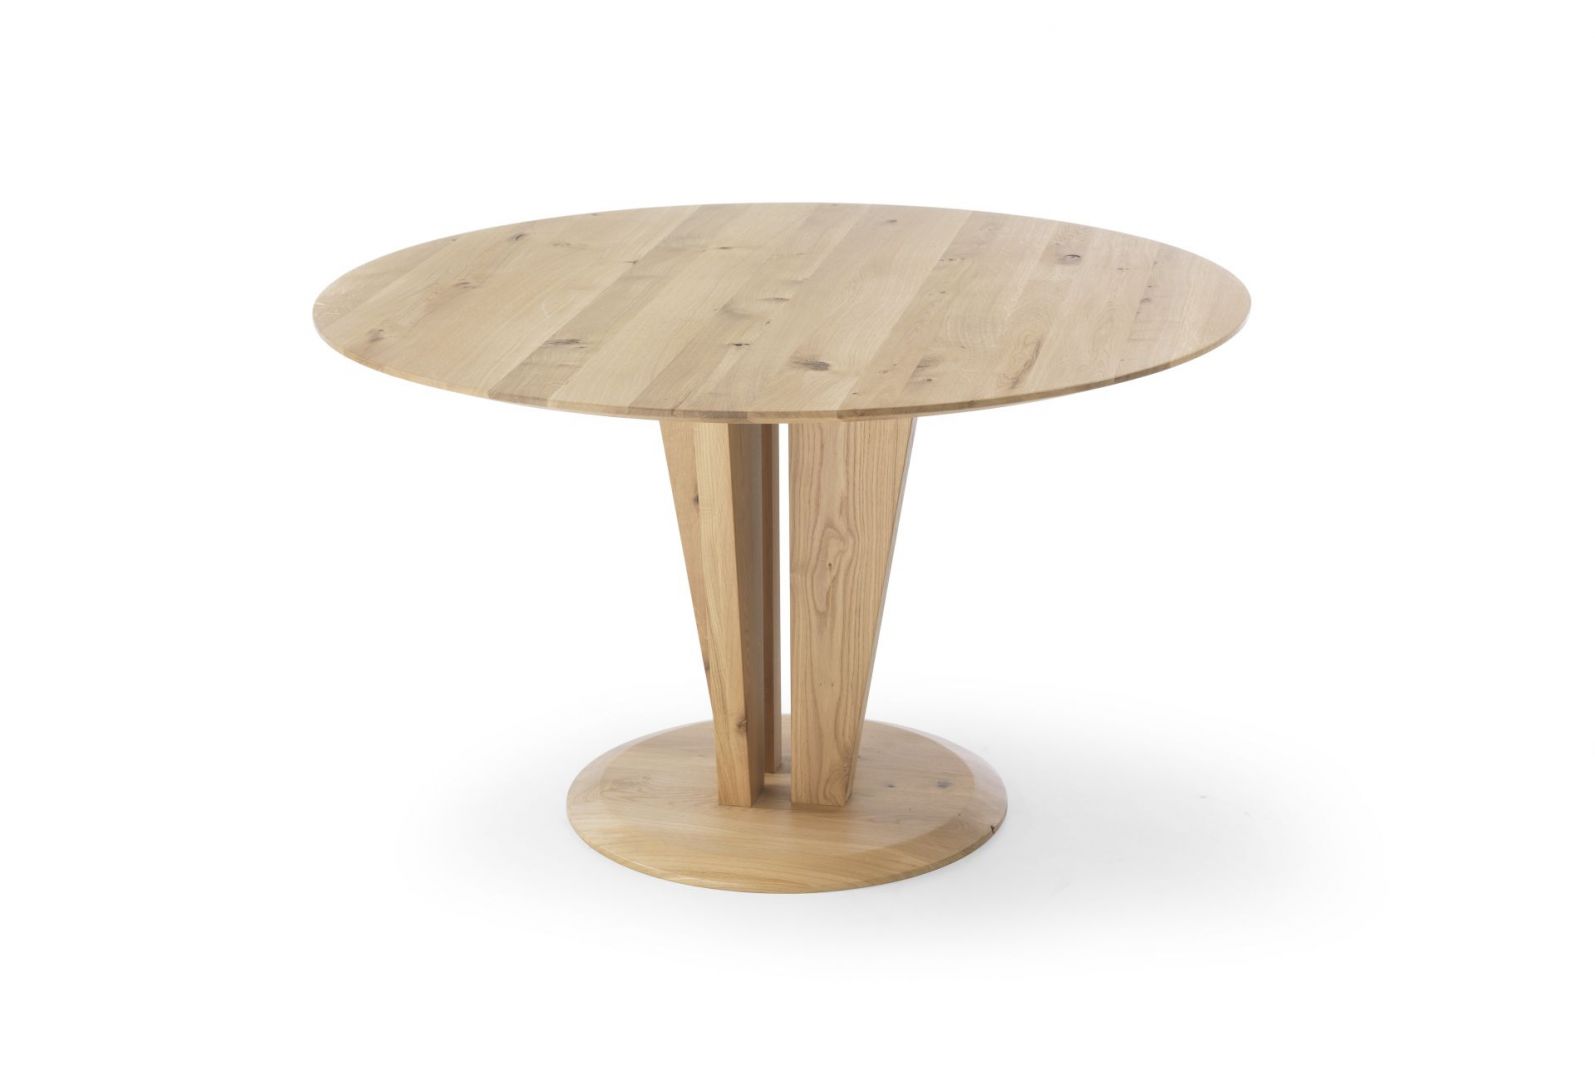 Okrągły stół Risoluto, wykonany z drzewa dębowego, o klasycznym ubarwieniu. Cienki blat stołu średniej grubości jest bardzo wygodny i praktyczny. Fot. Congrazio